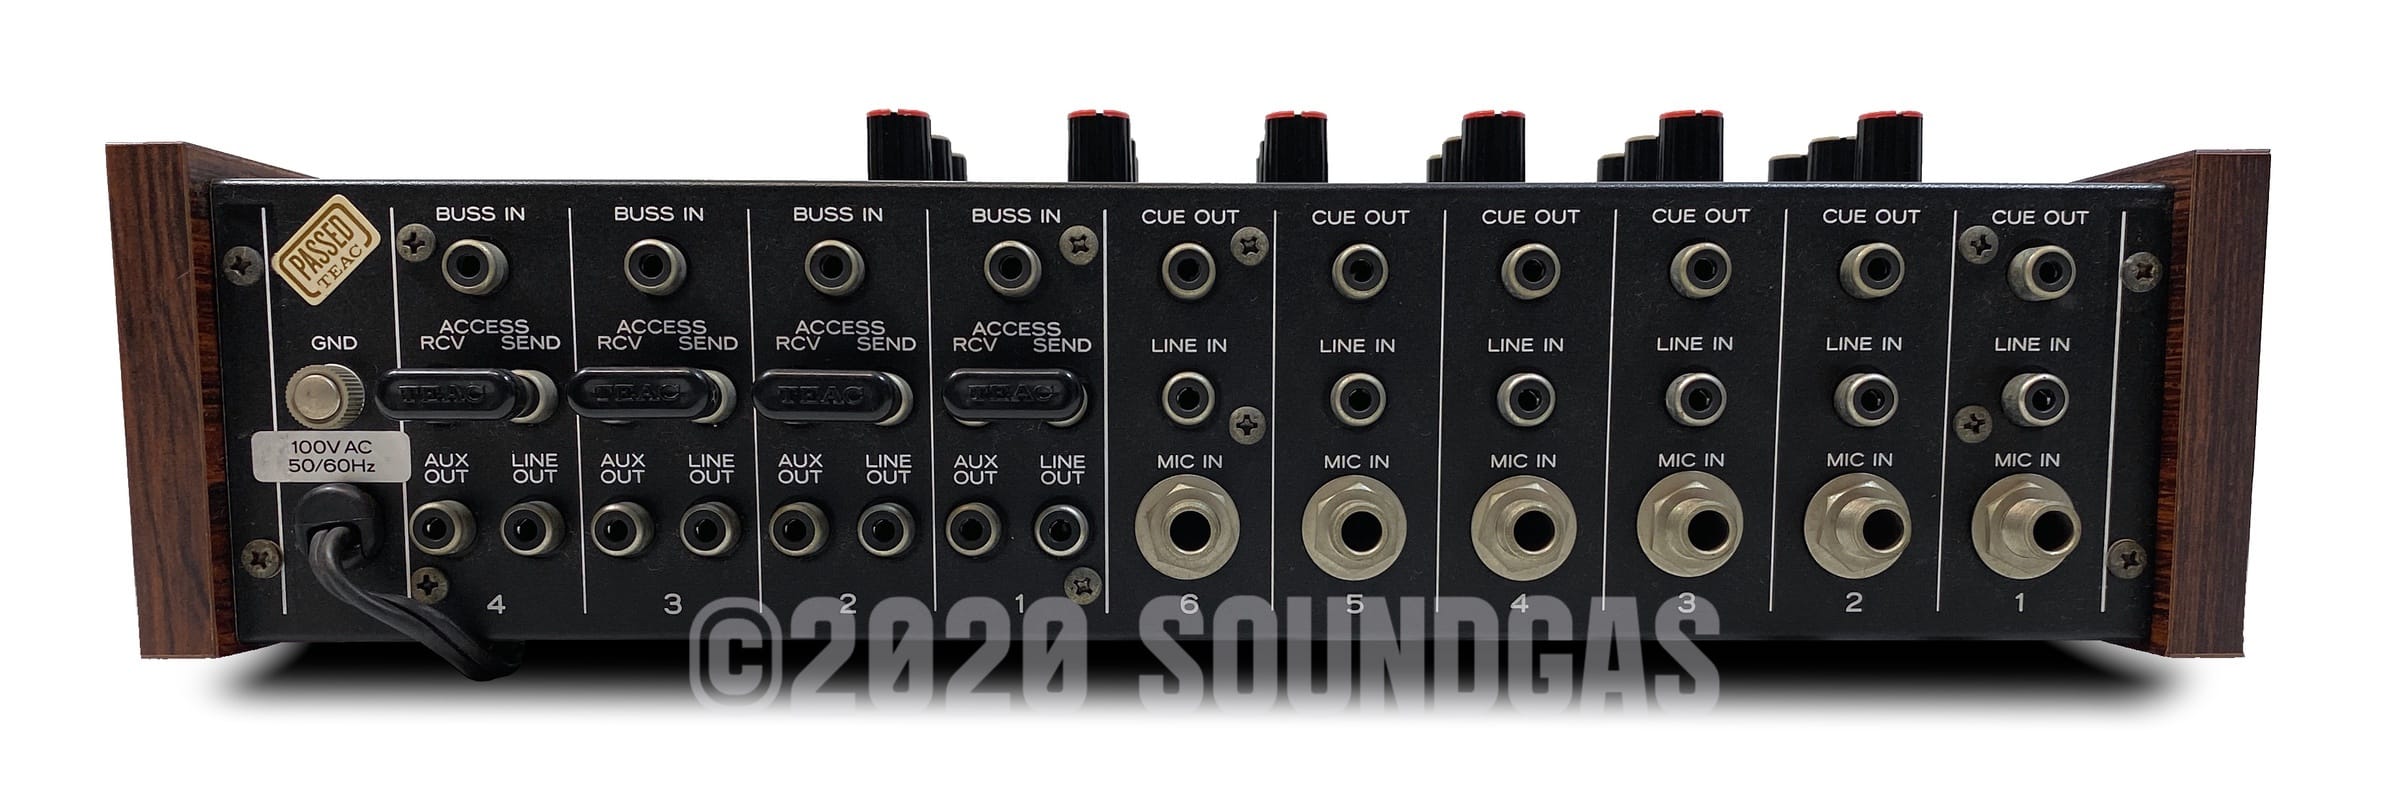 Forholdsvis Sway bruser Teac Model-2A - Vintage 6-channel Mixer FOR SALE - Soundgas